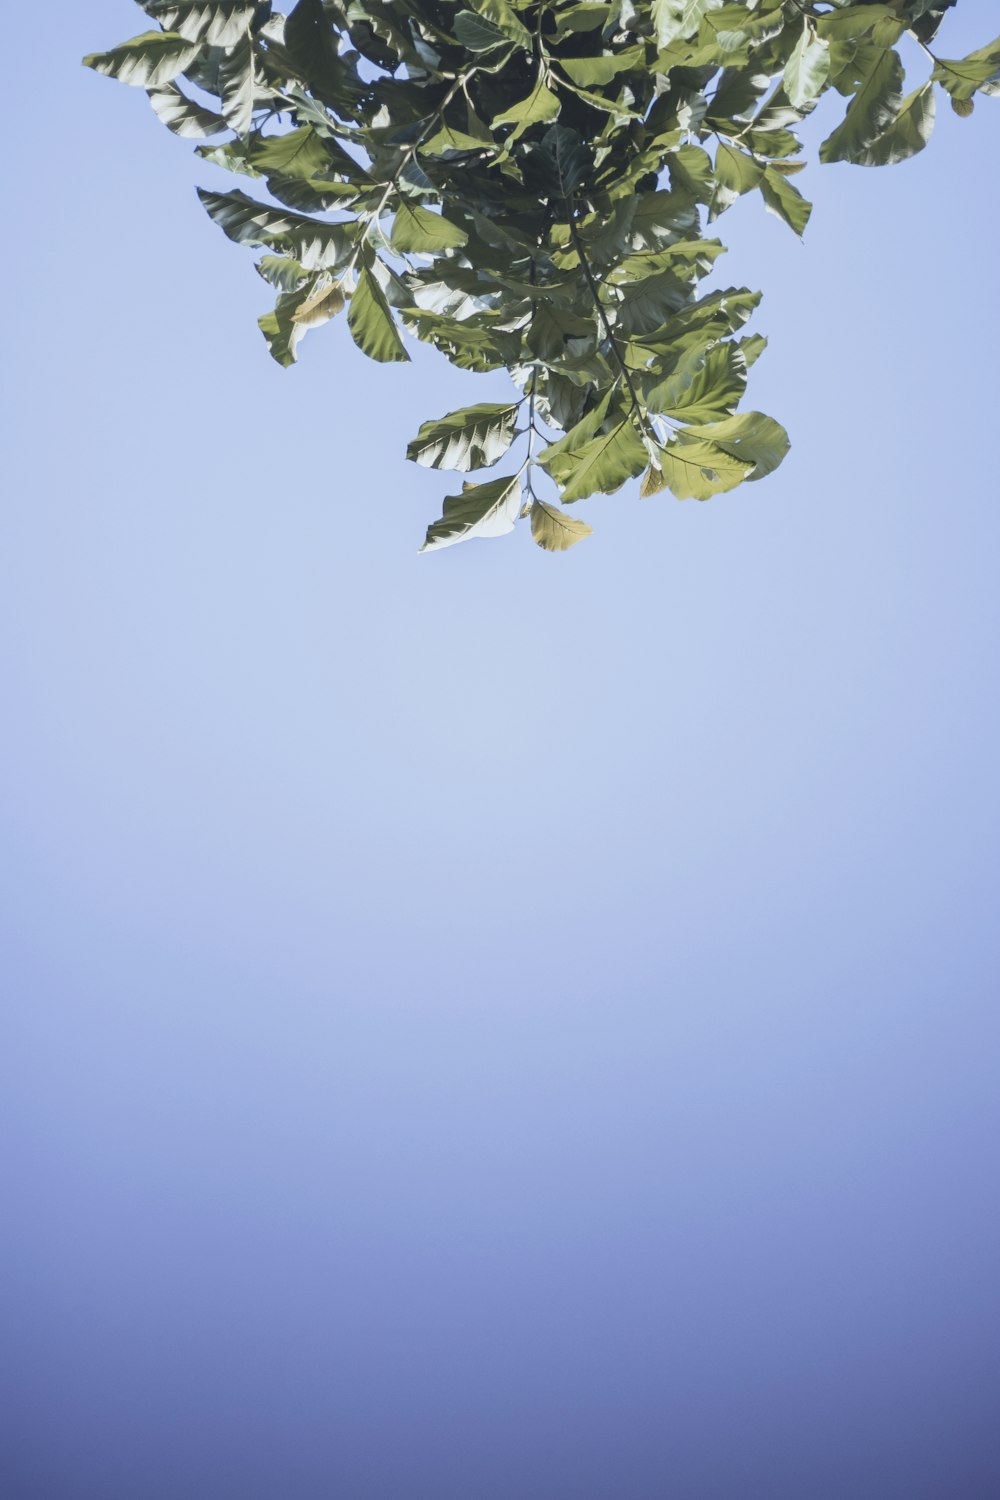 green leaf under blue sky during daytime